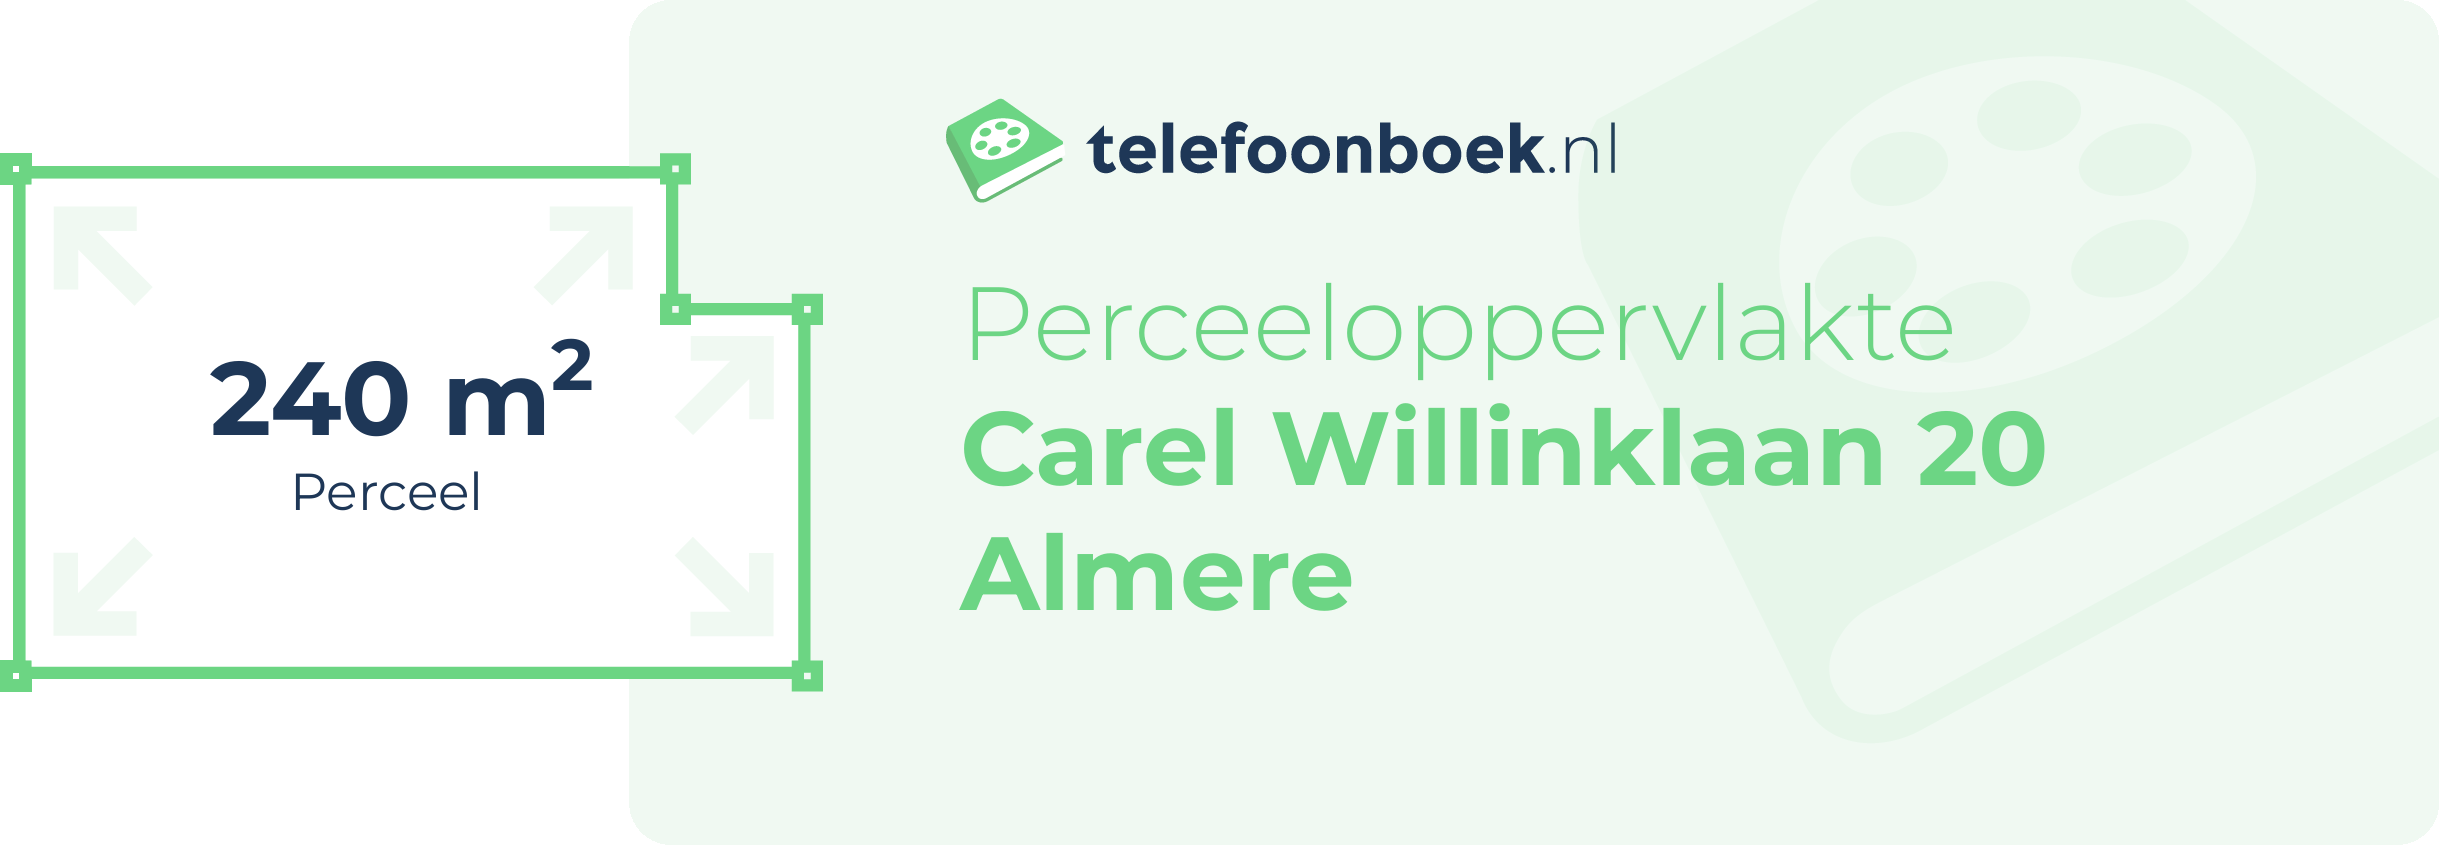 Perceeloppervlakte Carel Willinklaan 20 Almere